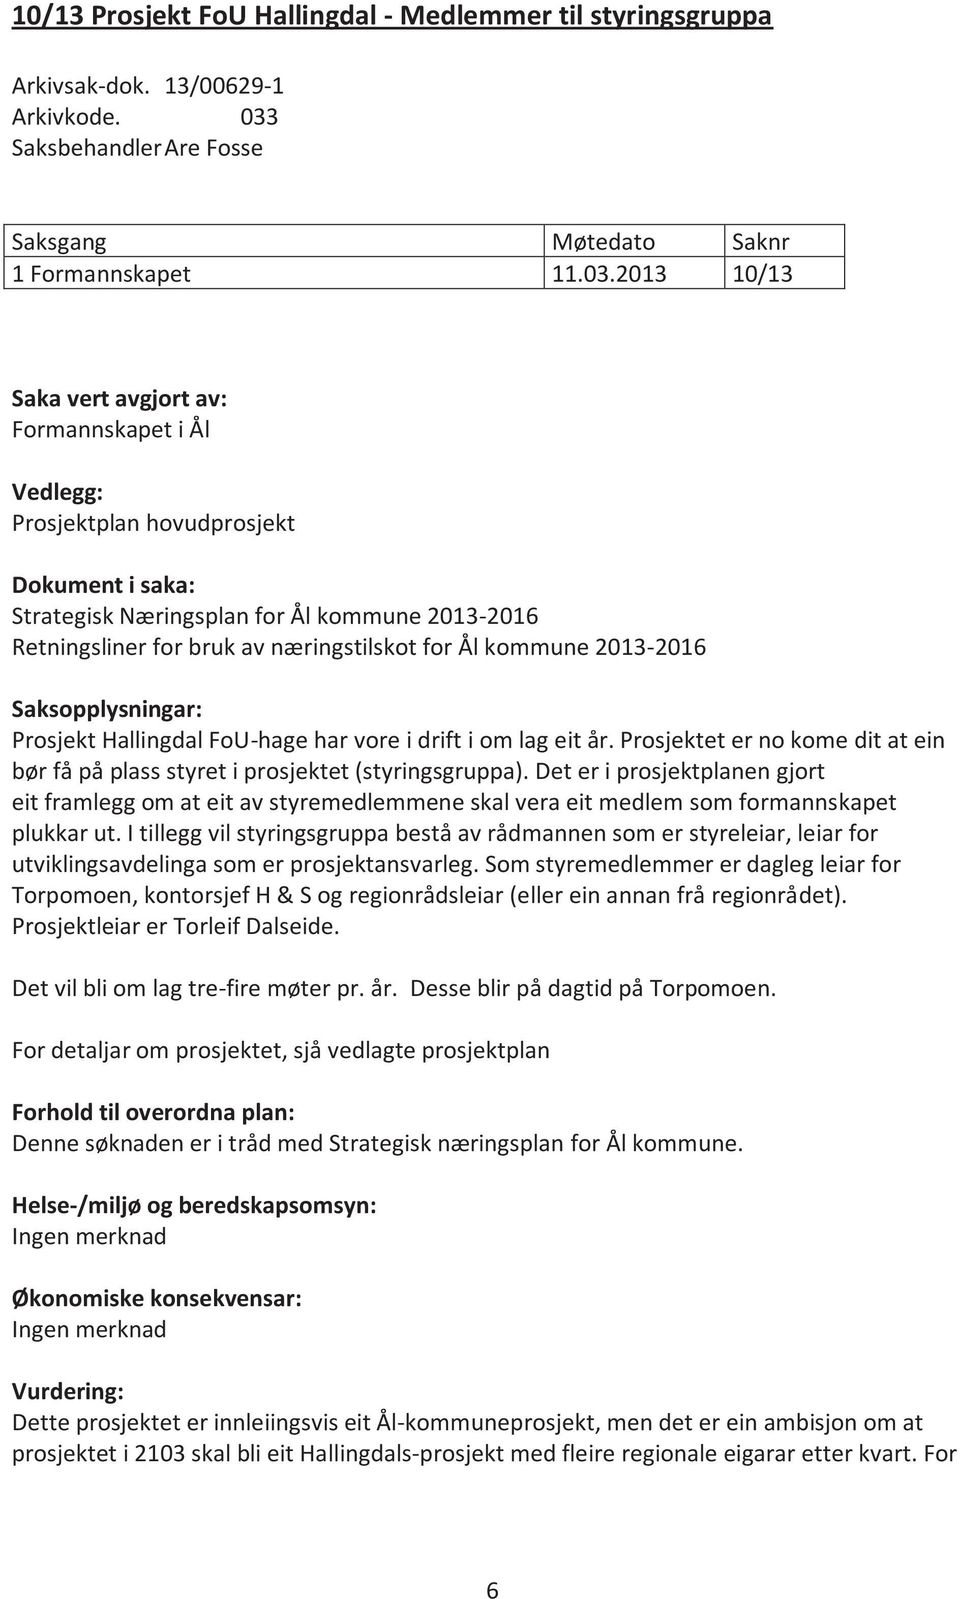 2013 10/13 Formannskapet i Ål Vedlegg: Prosjektplan hovudprosjekt Dokument i saka: Strategisk Næringsplan for Ål kommune 2013-2016 Retningsliner for bruk av næringstilskot for Ål kommune 2013-2016